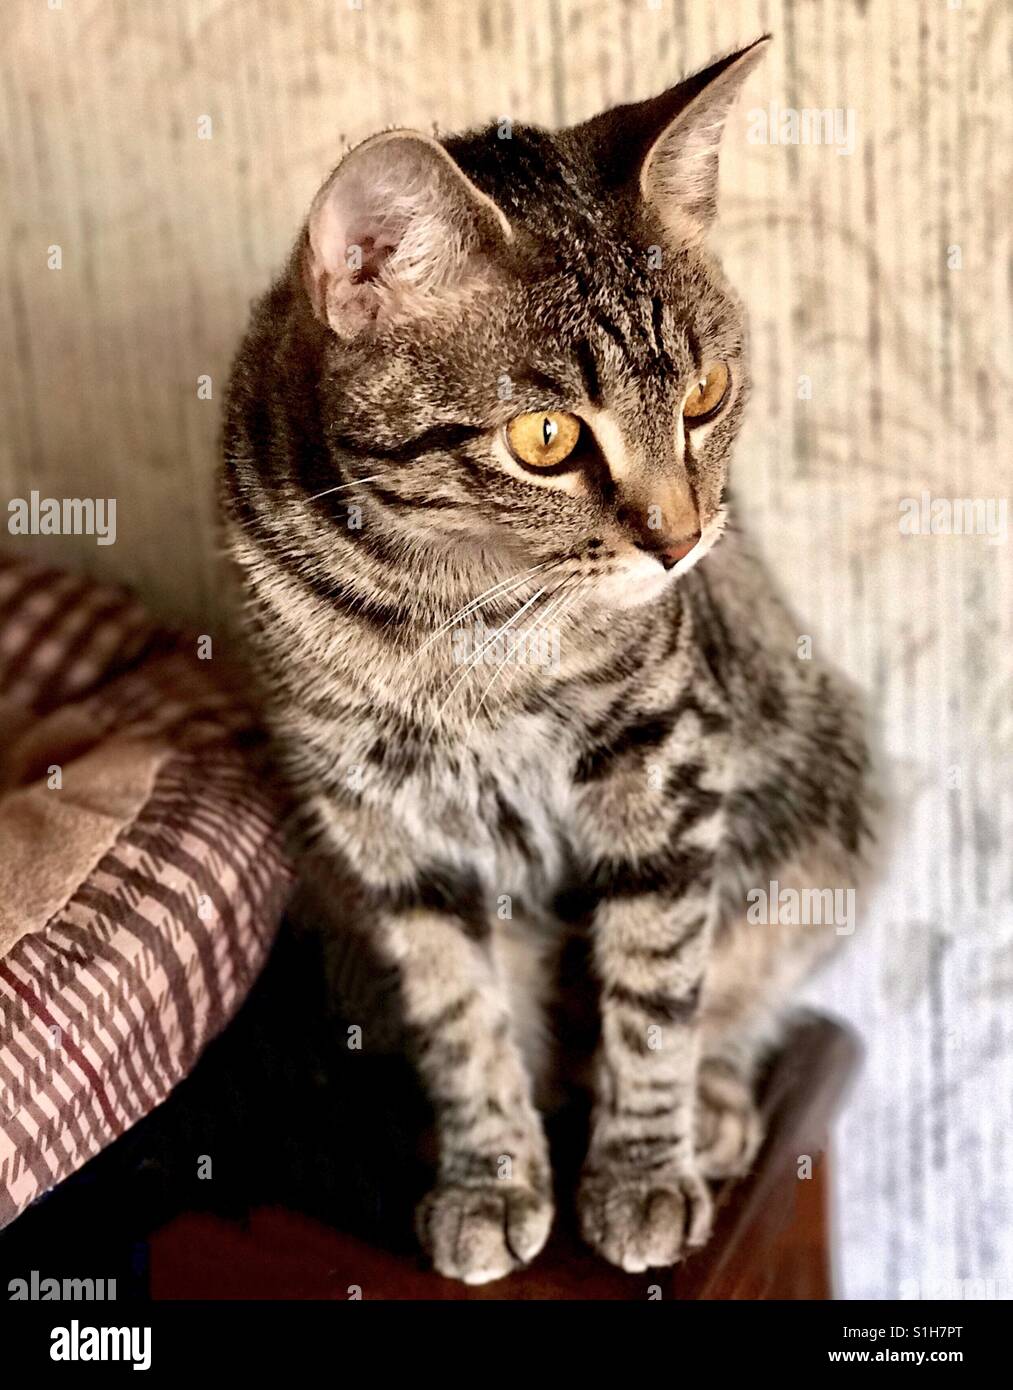 Portrait de vous belle branche ou American Shorthair tabby cat kitten adolescente avec de magnifiques yeux d'or et d'éminents stripes Banque D'Images